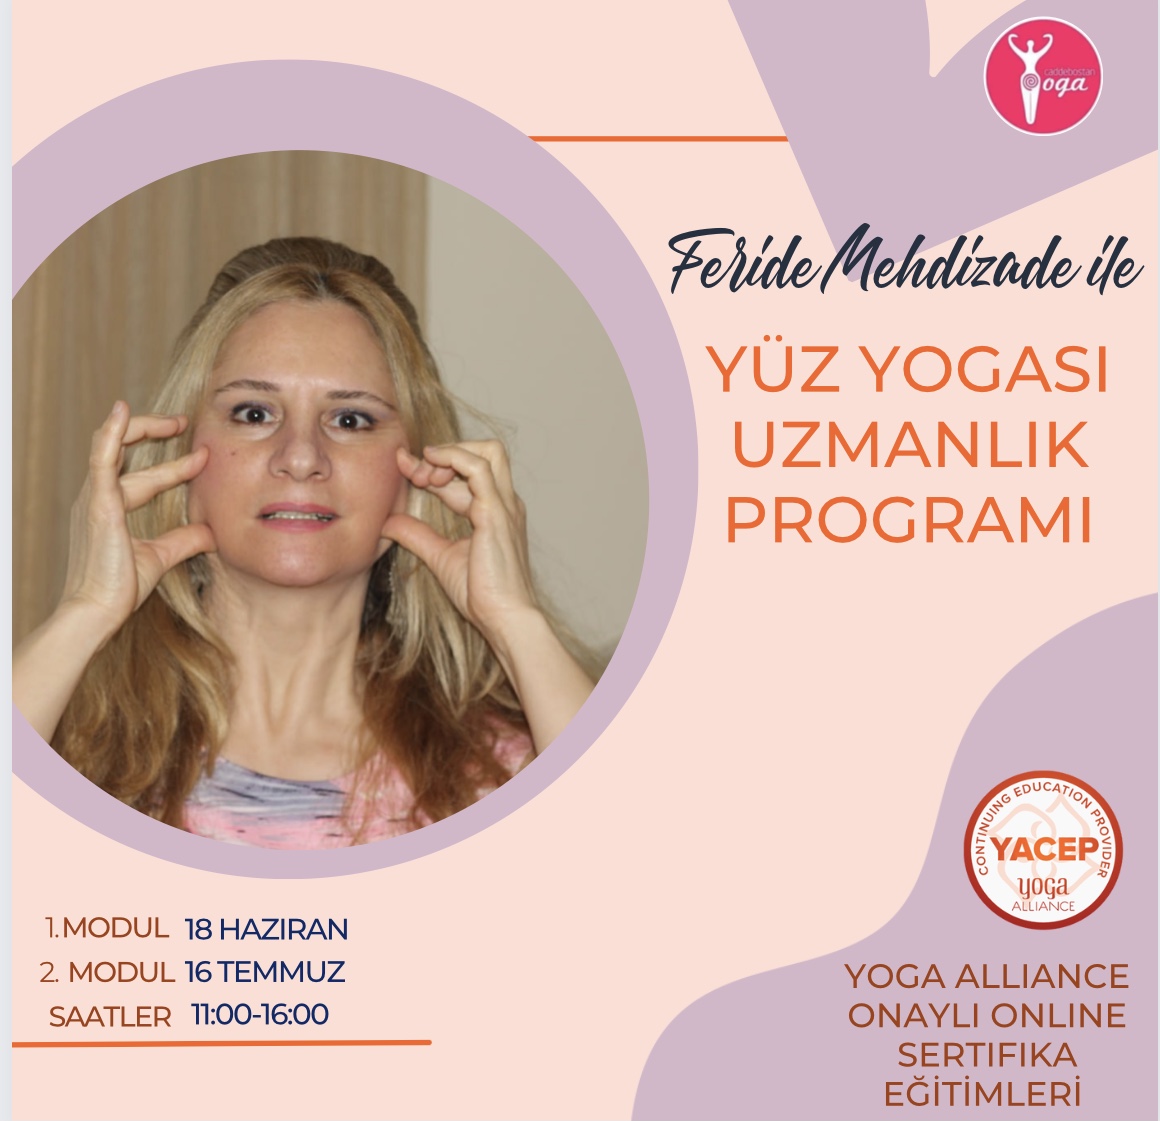 Feride Mehdizade ile Yoga Alliance Onaylı Online Yüz Yogası Sertifika Programı